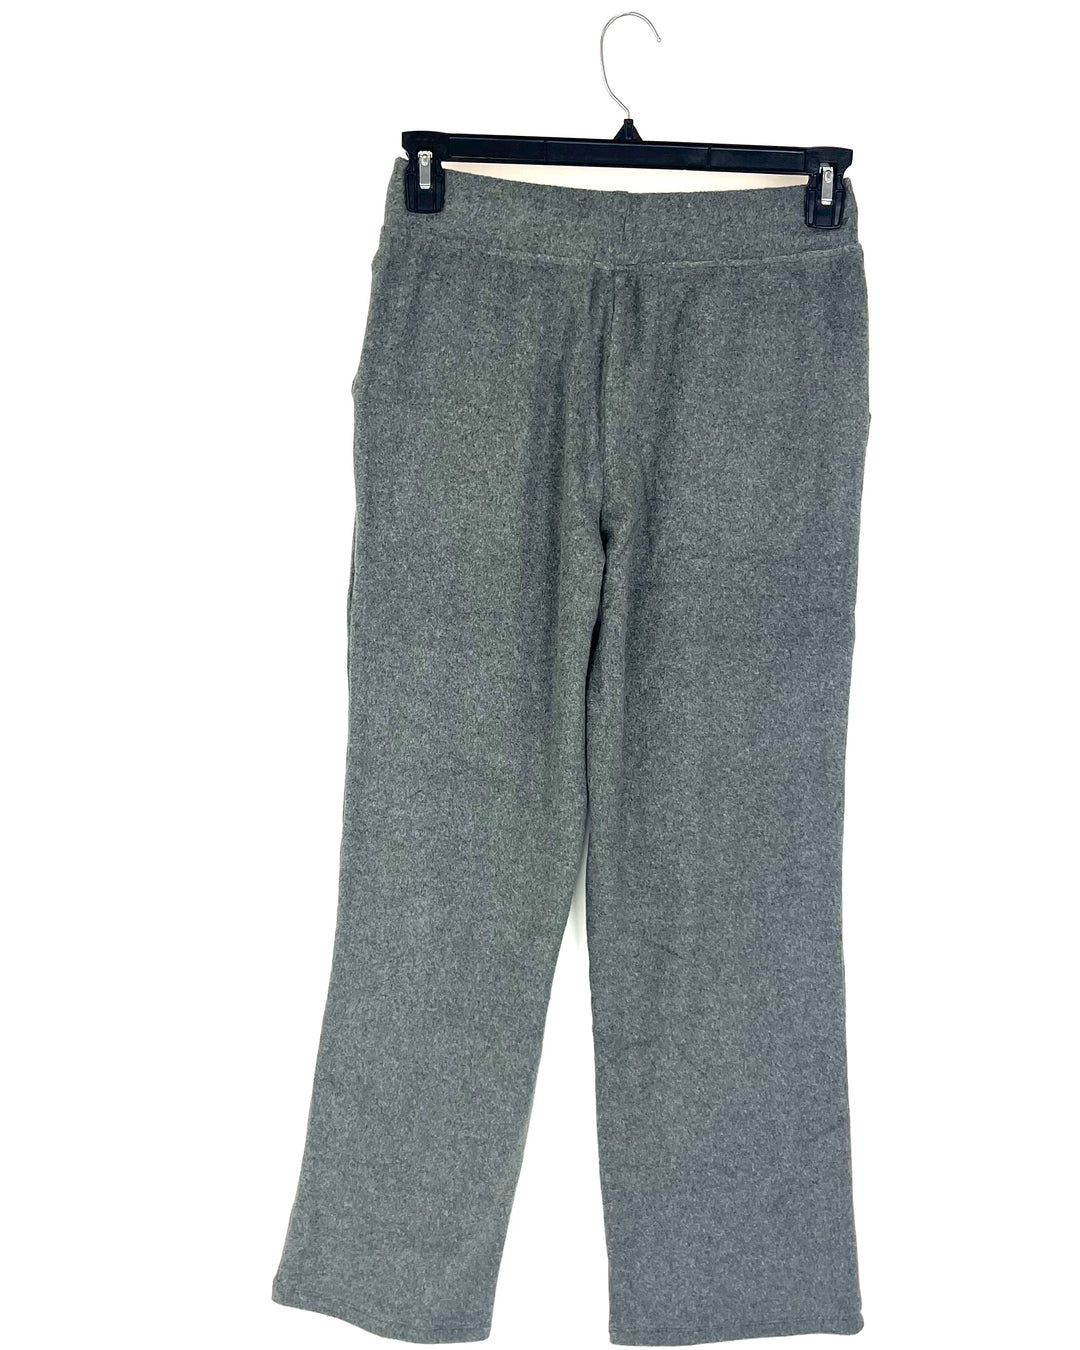 Grey Fleece Lounge Pants - Size 4/6